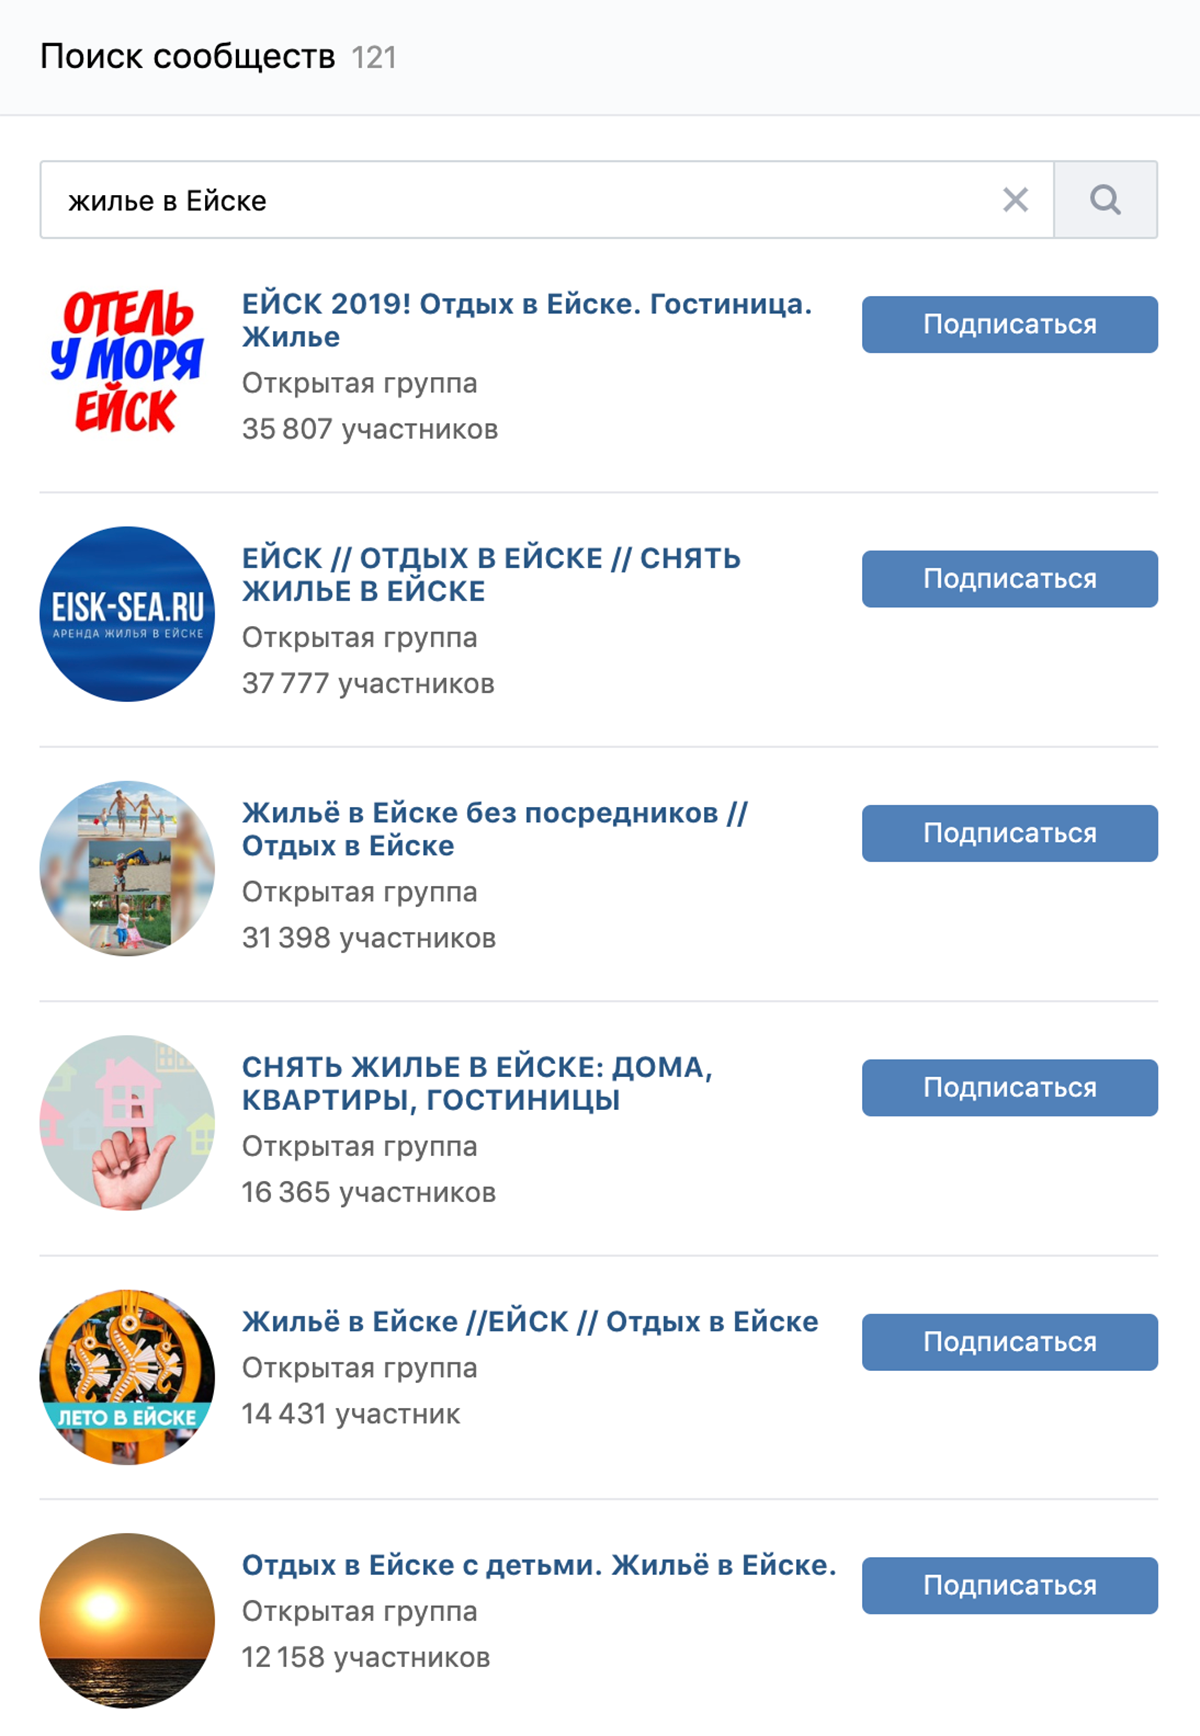 Во «Вконтакте» множество сообществ, в которых предлагают жилье для туристов в Ейске